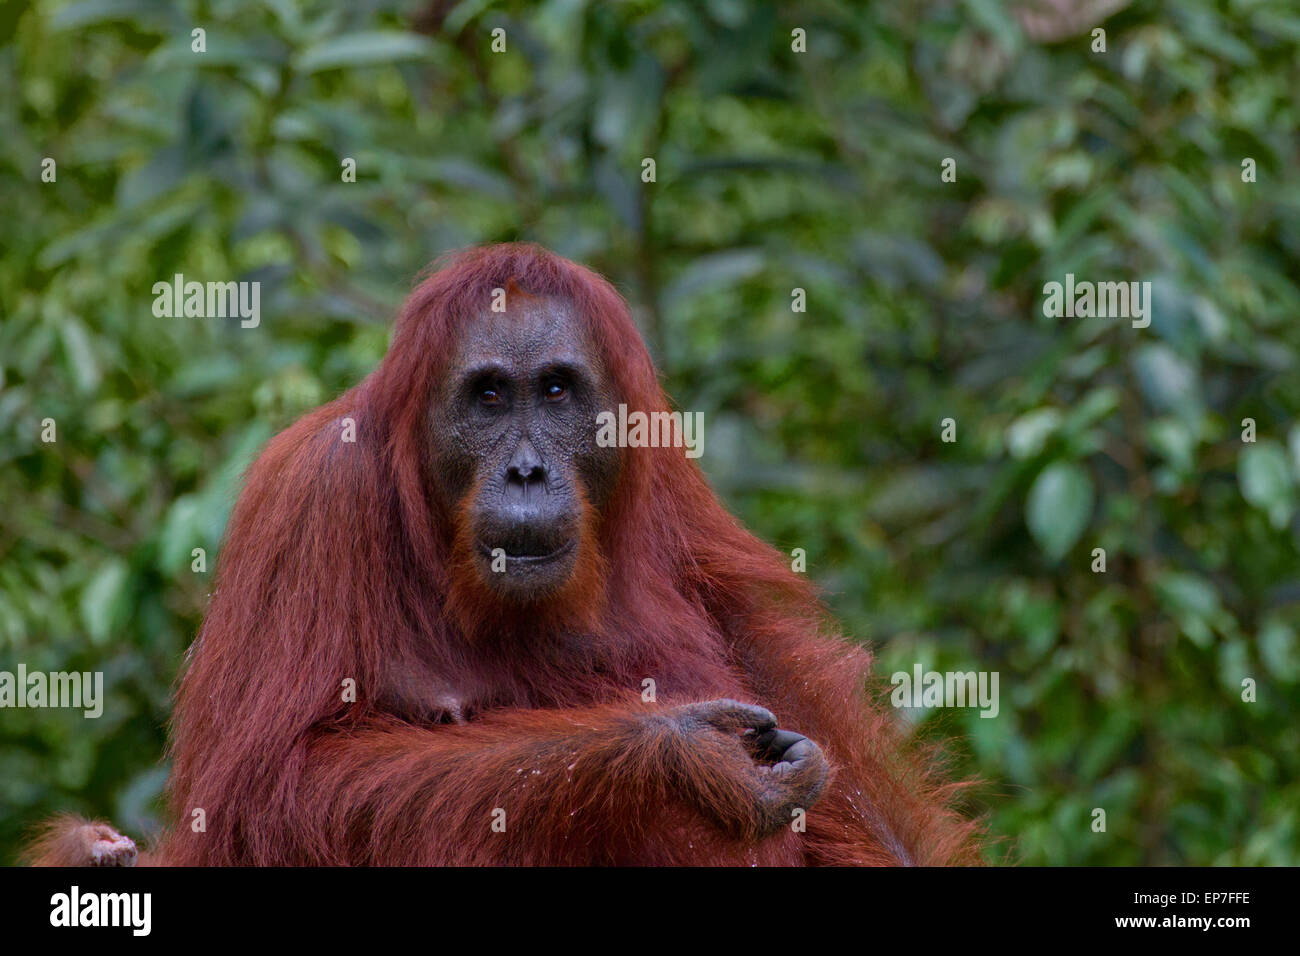 Old Female Orangutan Stock Photo